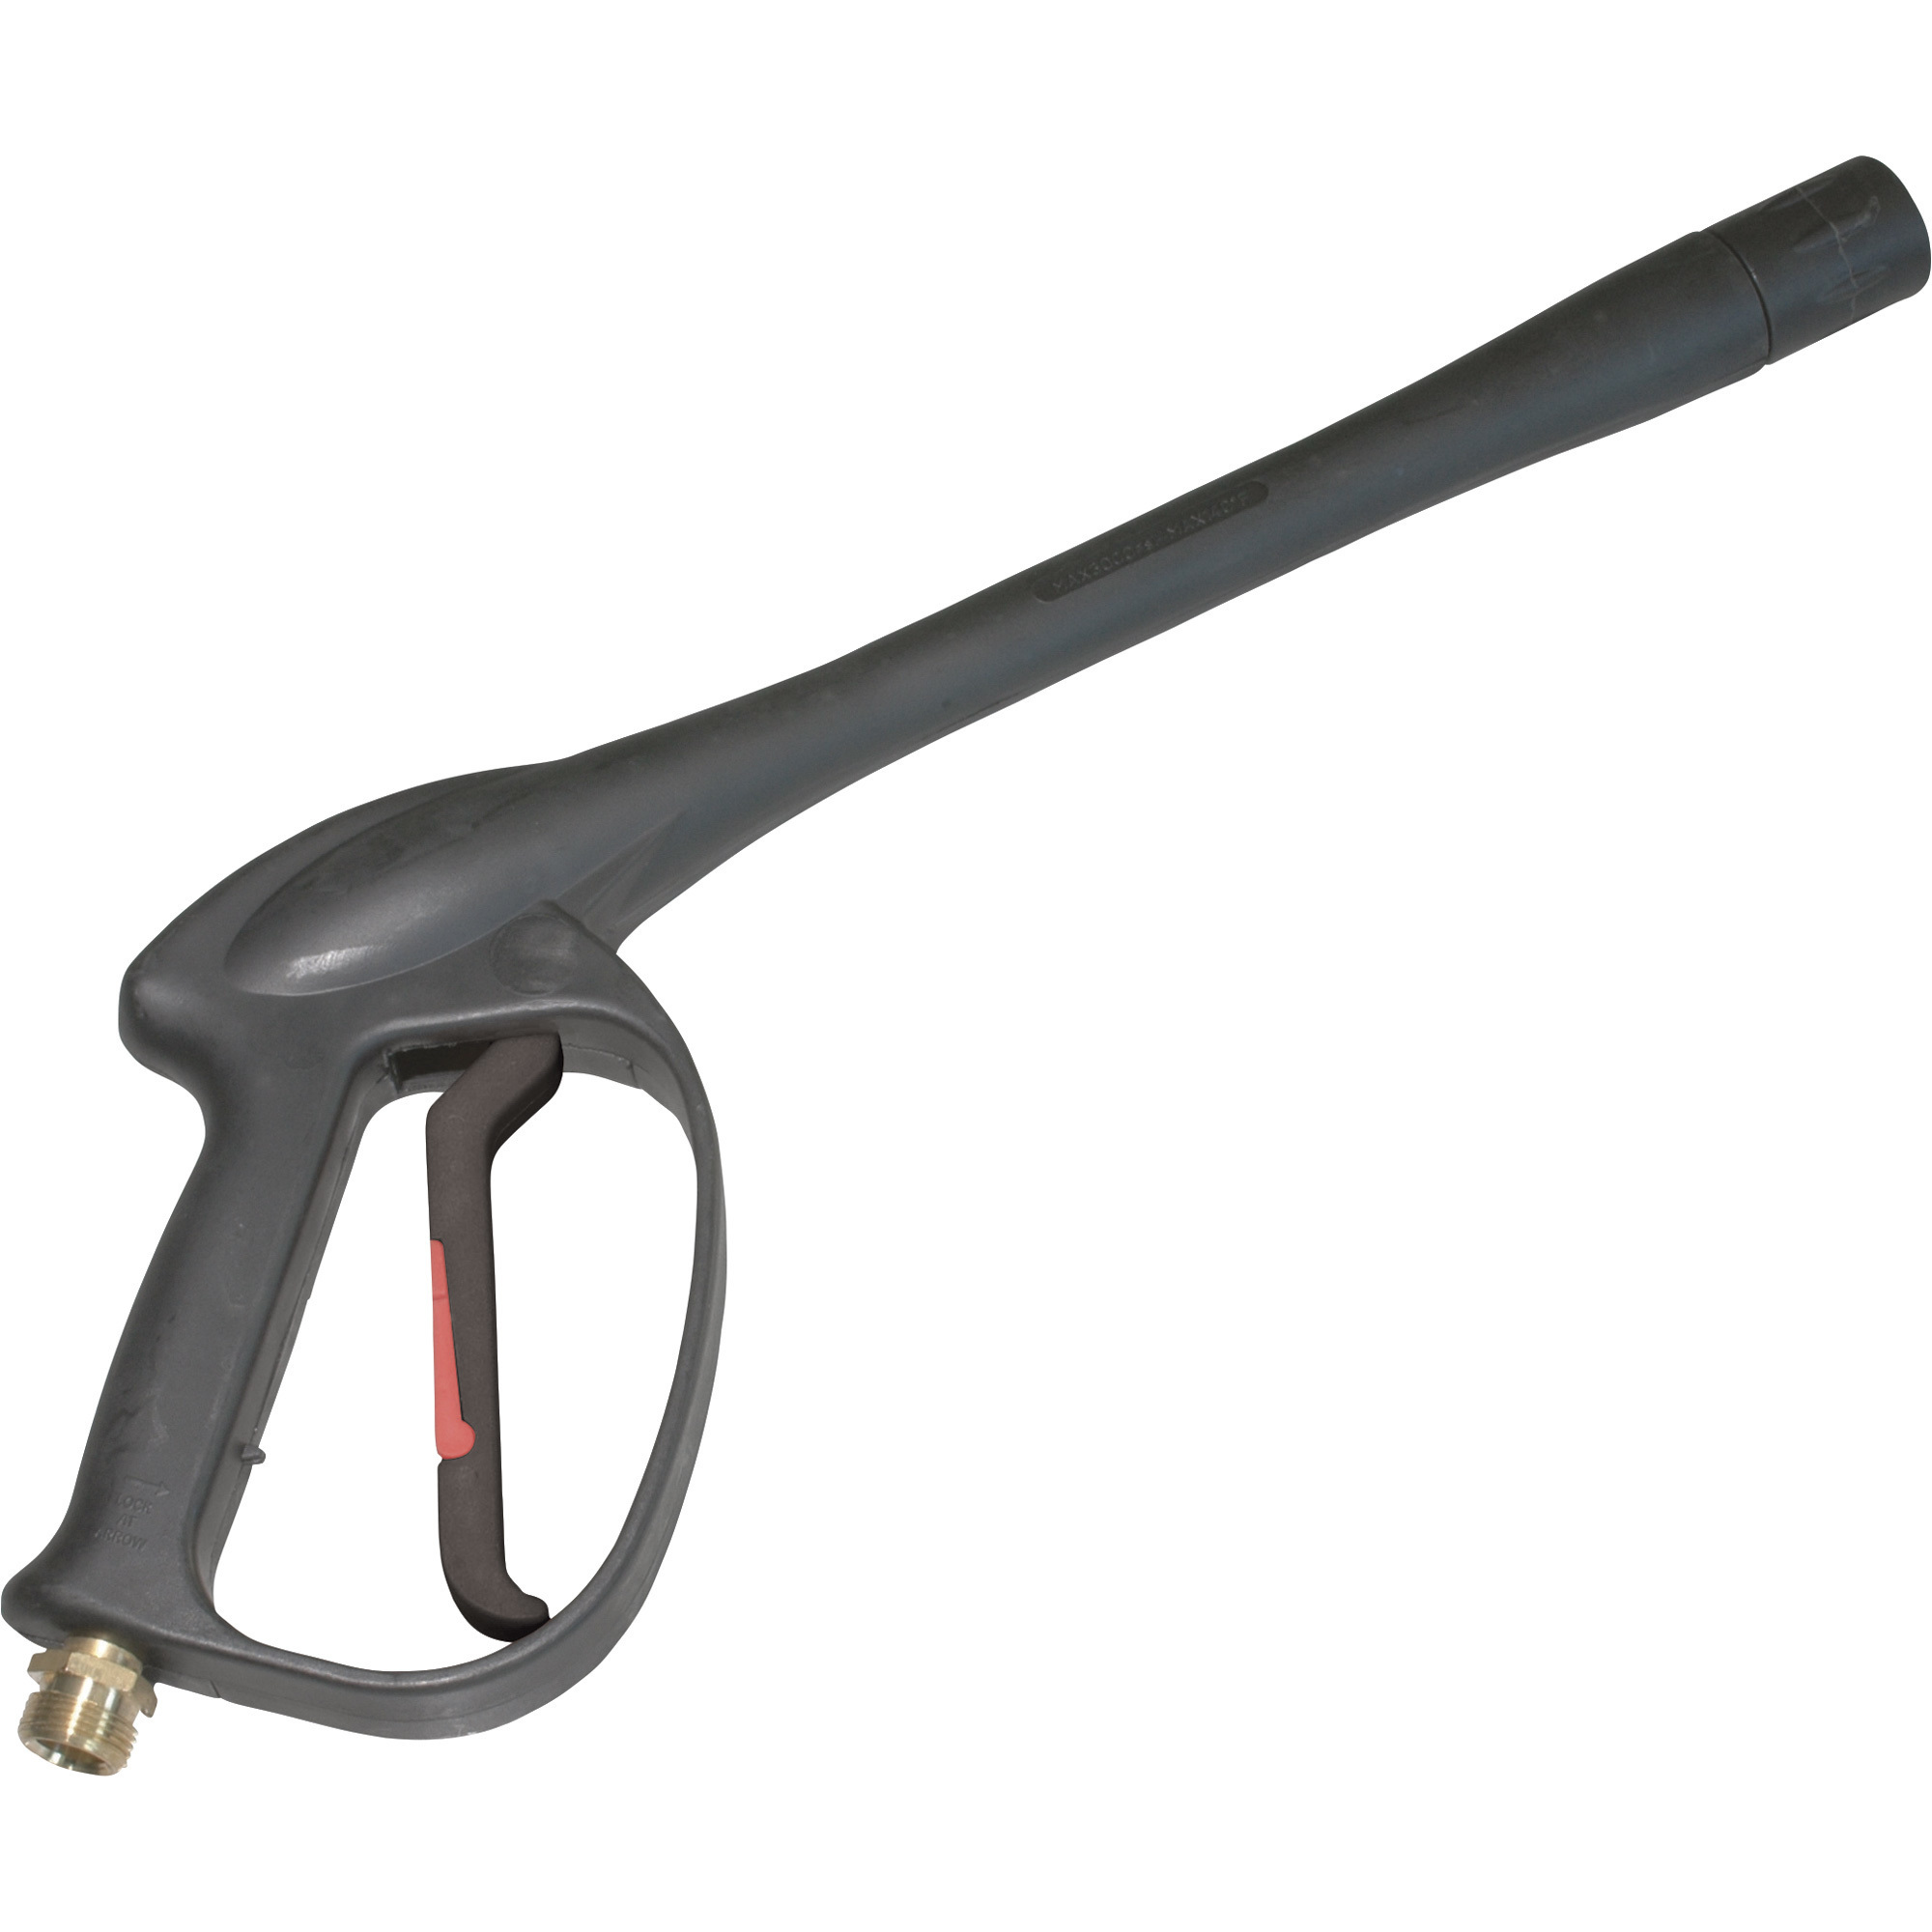 General Pump Pressure Washer Spray Gun â 2750 PSI, 4.0 GPM, Model 2100219P